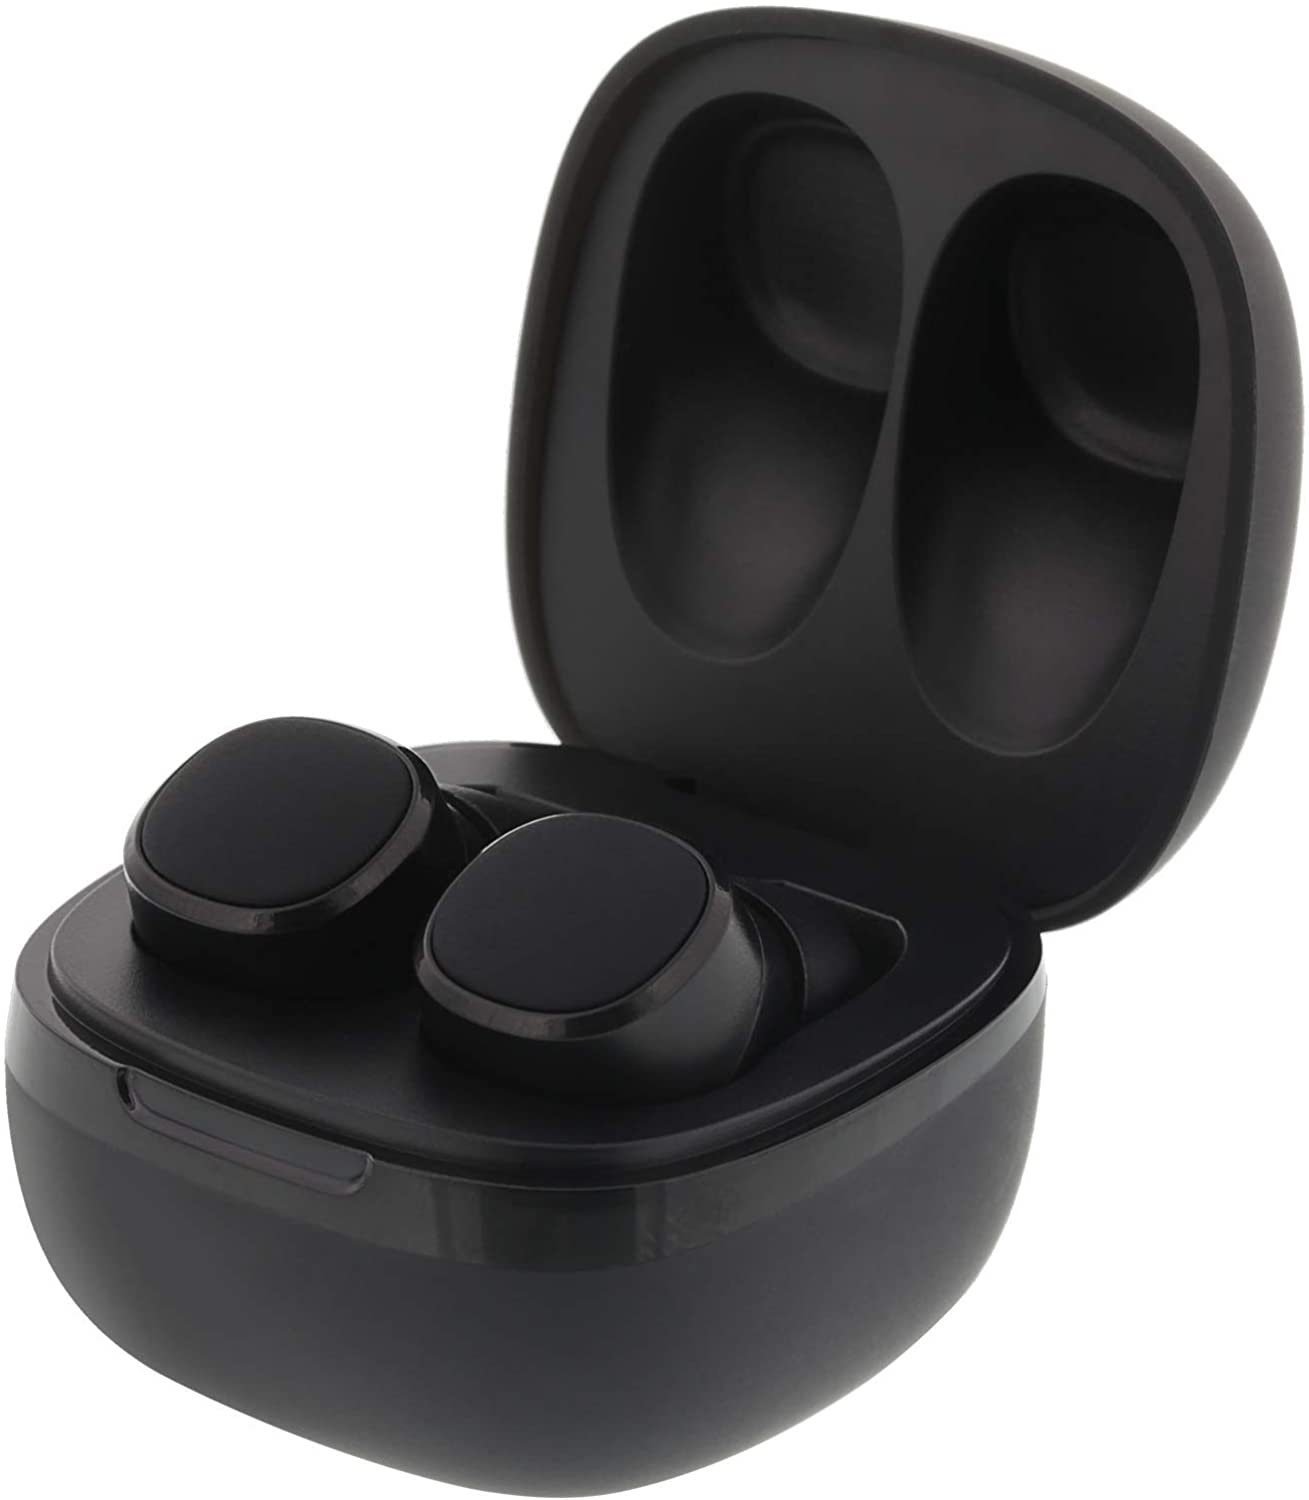 STREETZ Streetz Stereo (Bluetooth mit Kabellose Earbuds) In In Bluetooth-Kopfhörer Earbuds Kopfhörer, Ear Ear Premi Bluetooth Kopfhörer, Kabellose